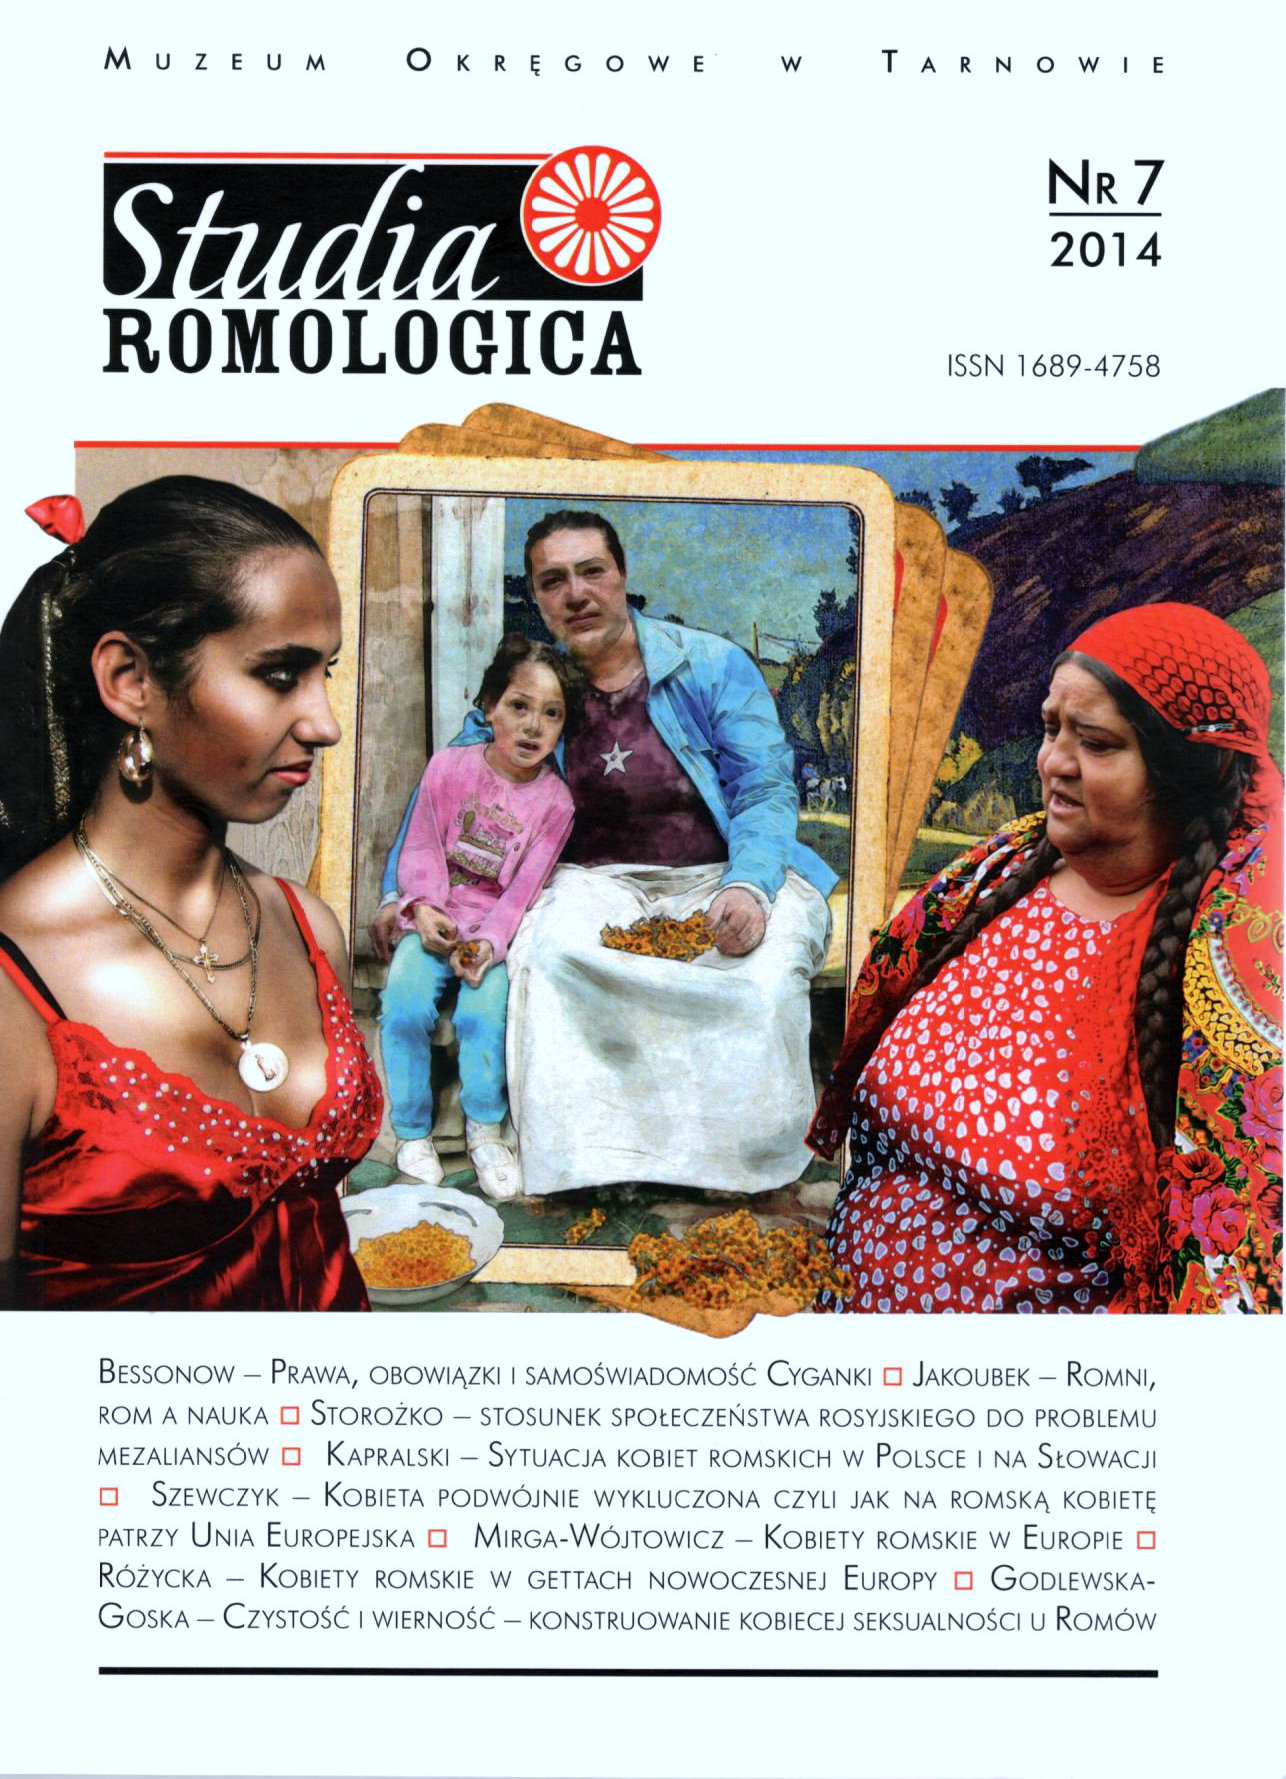 Kobiety romskie w Europie – główne problemy w realizacji praw